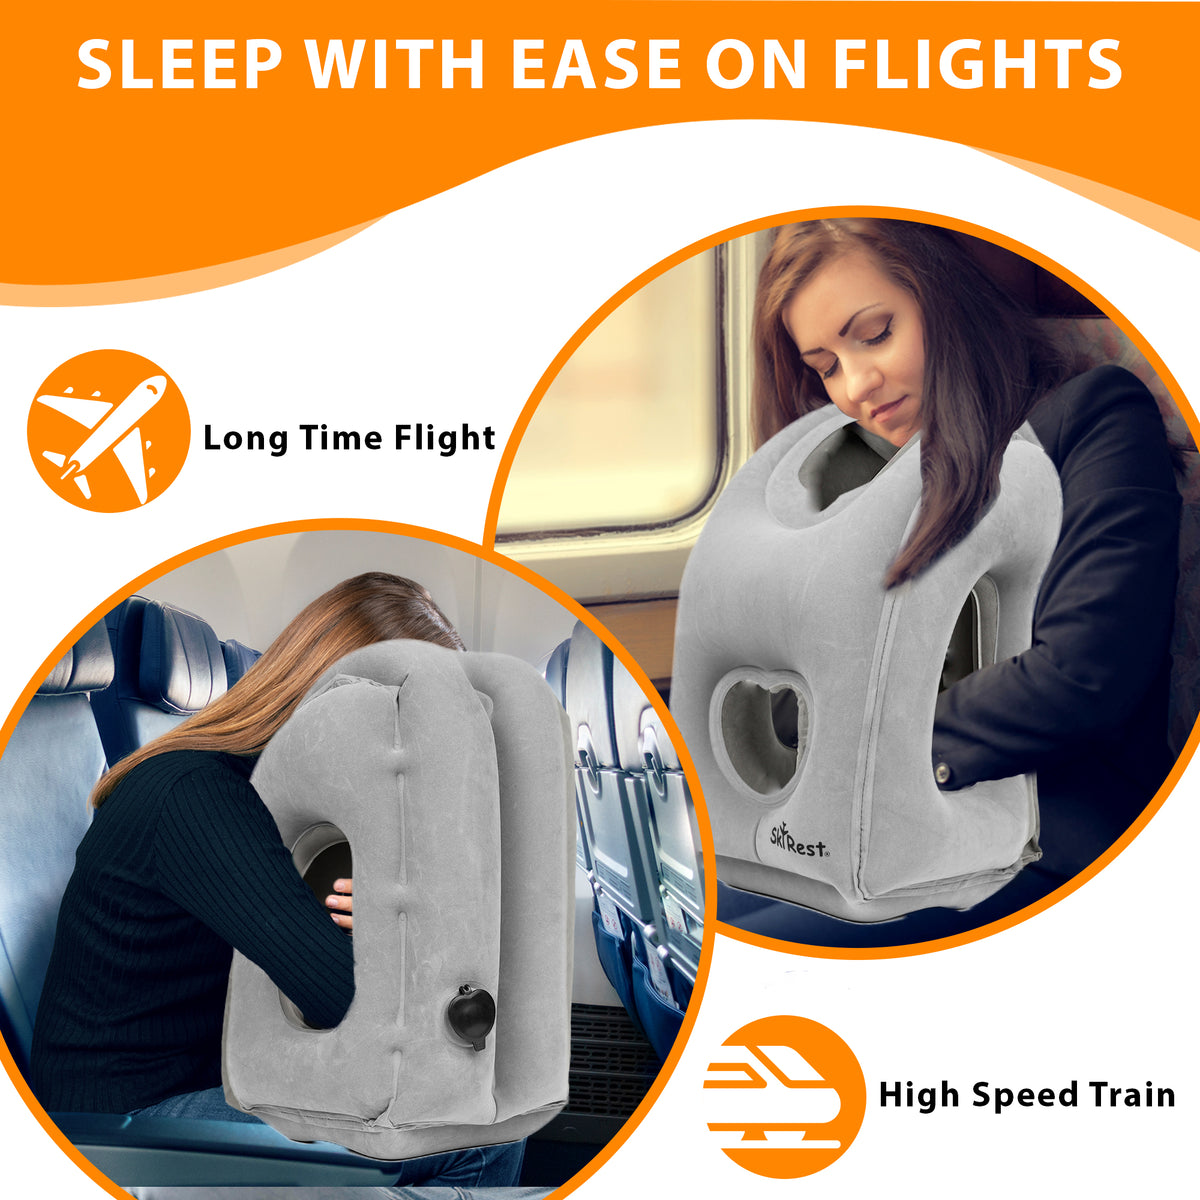 Flight Fillow: Stuffable Travel Pillow, Lumbar Support for Plane & Car –  Flight Fillow, LLC